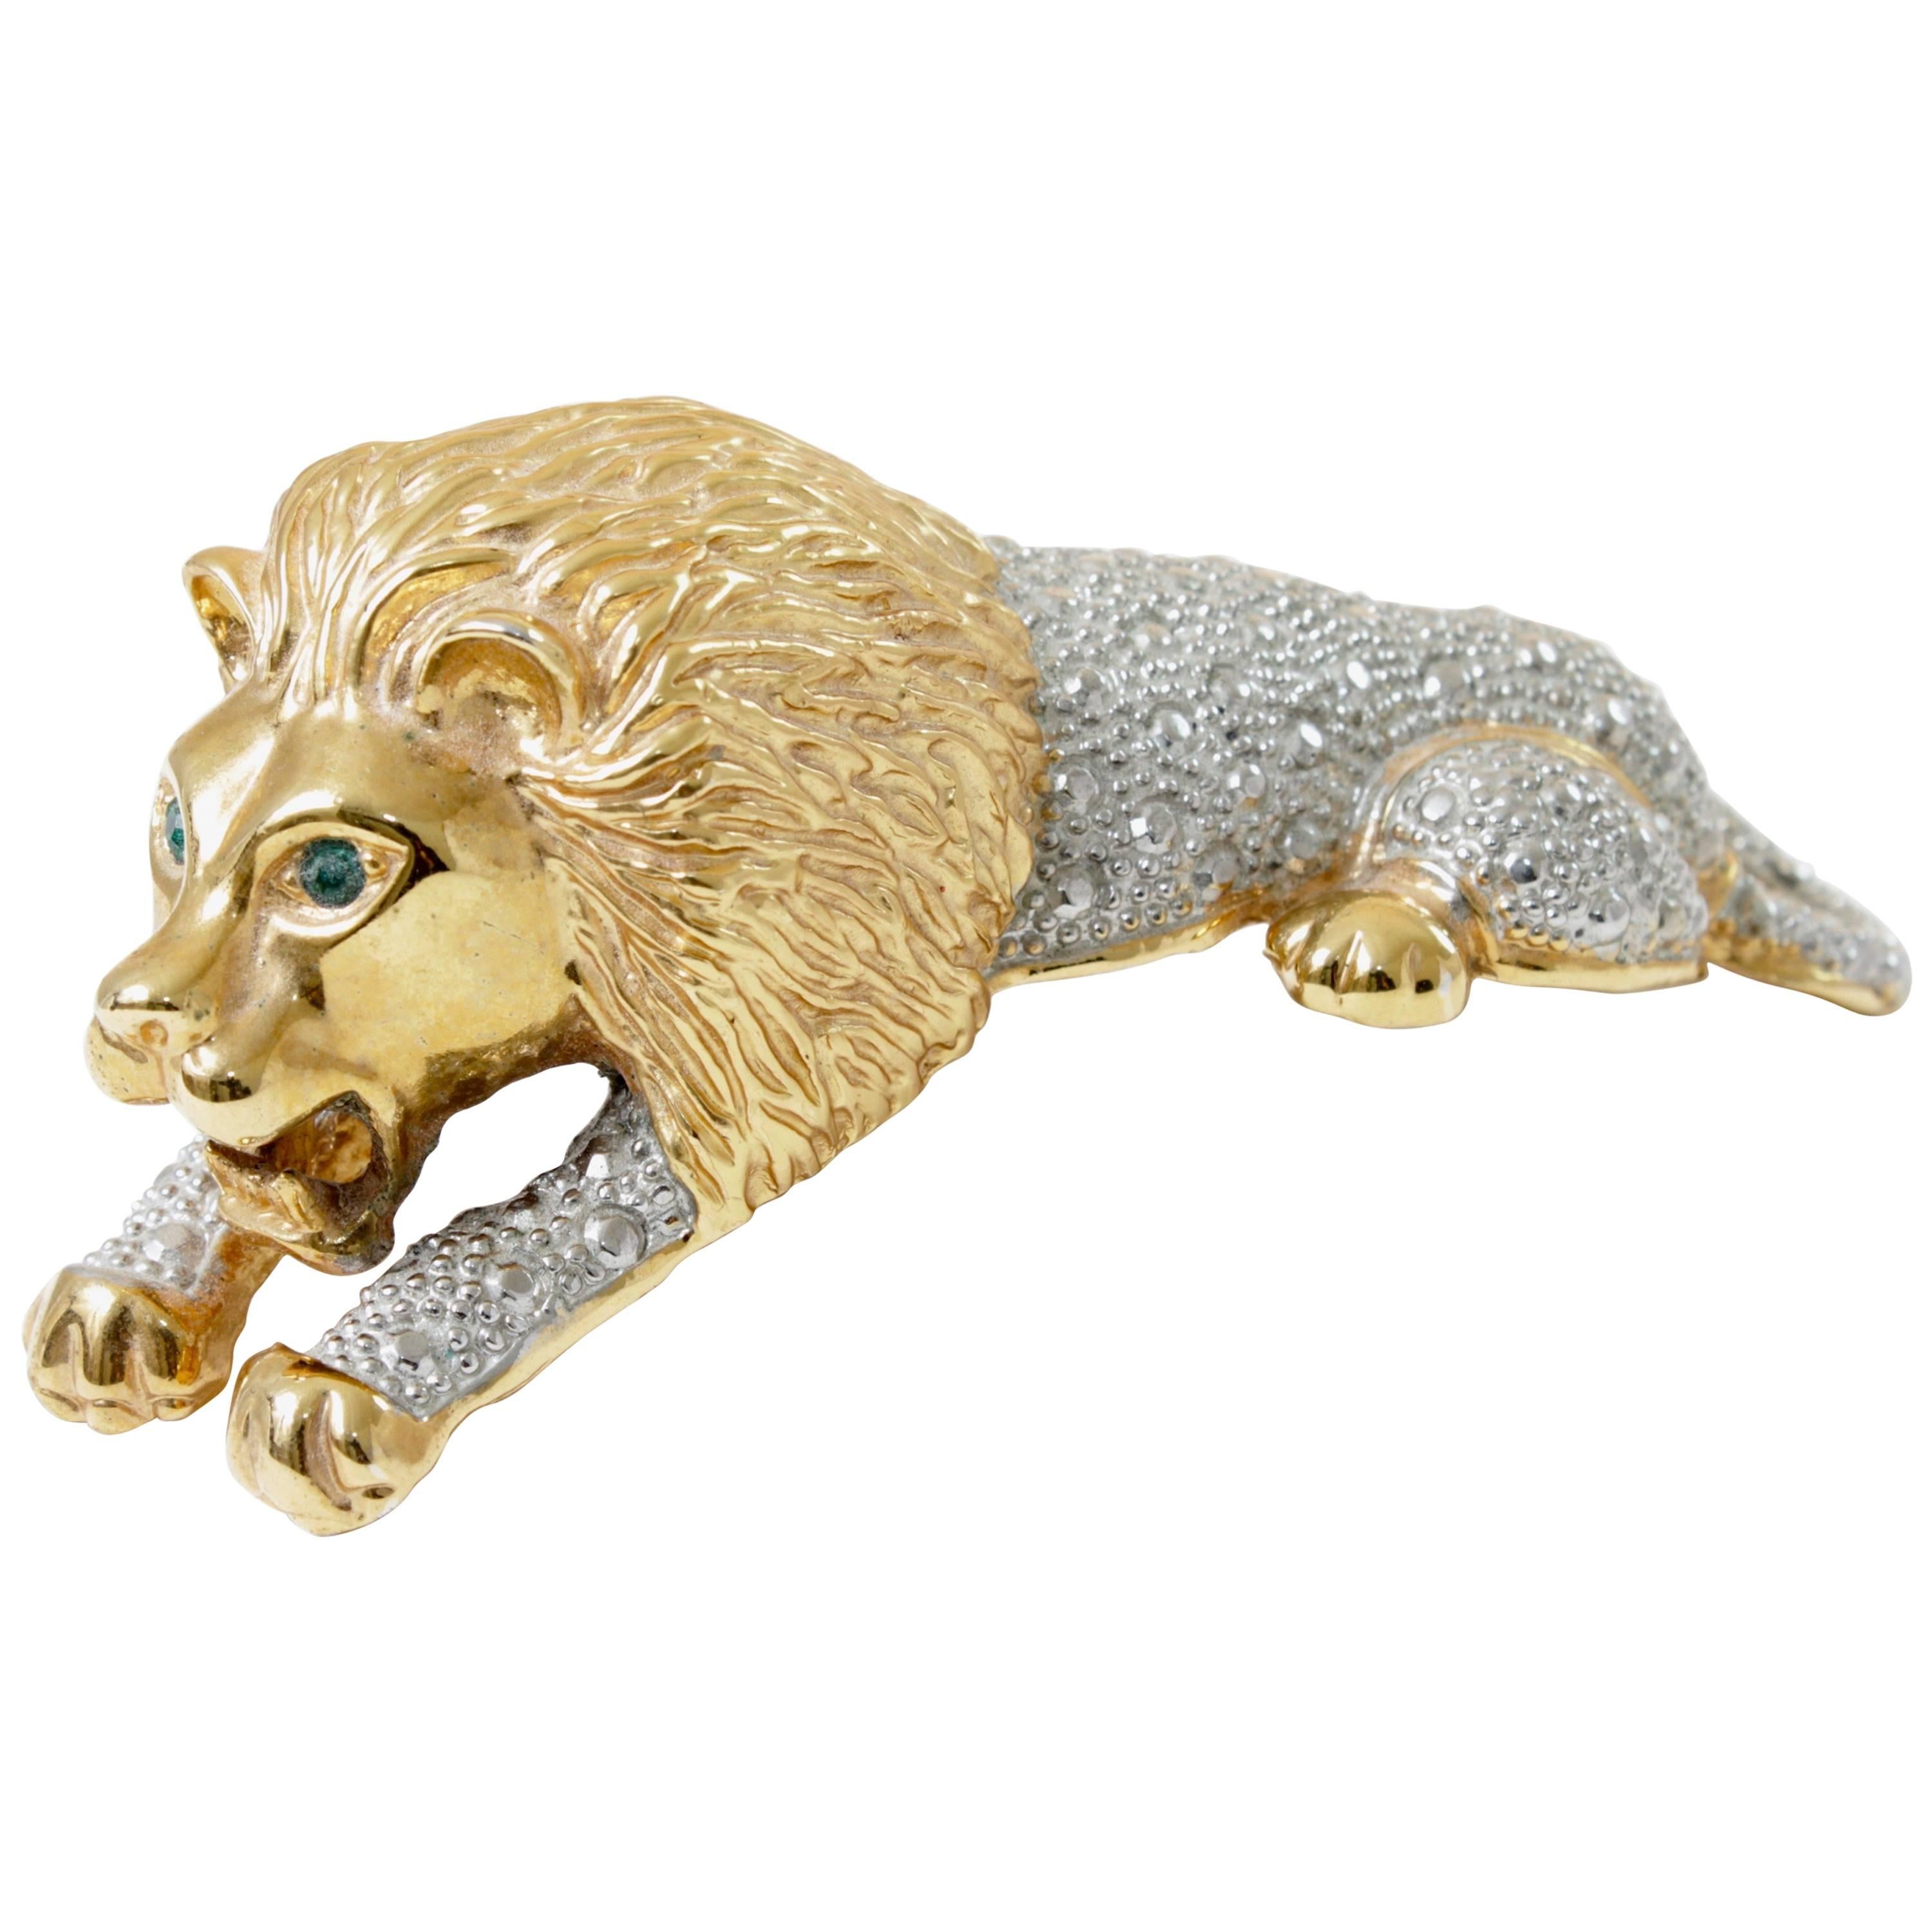 Roaring Lion Brooch Large Vintage Figural Shoulder Pin 4 inch Gold Silver Metal 